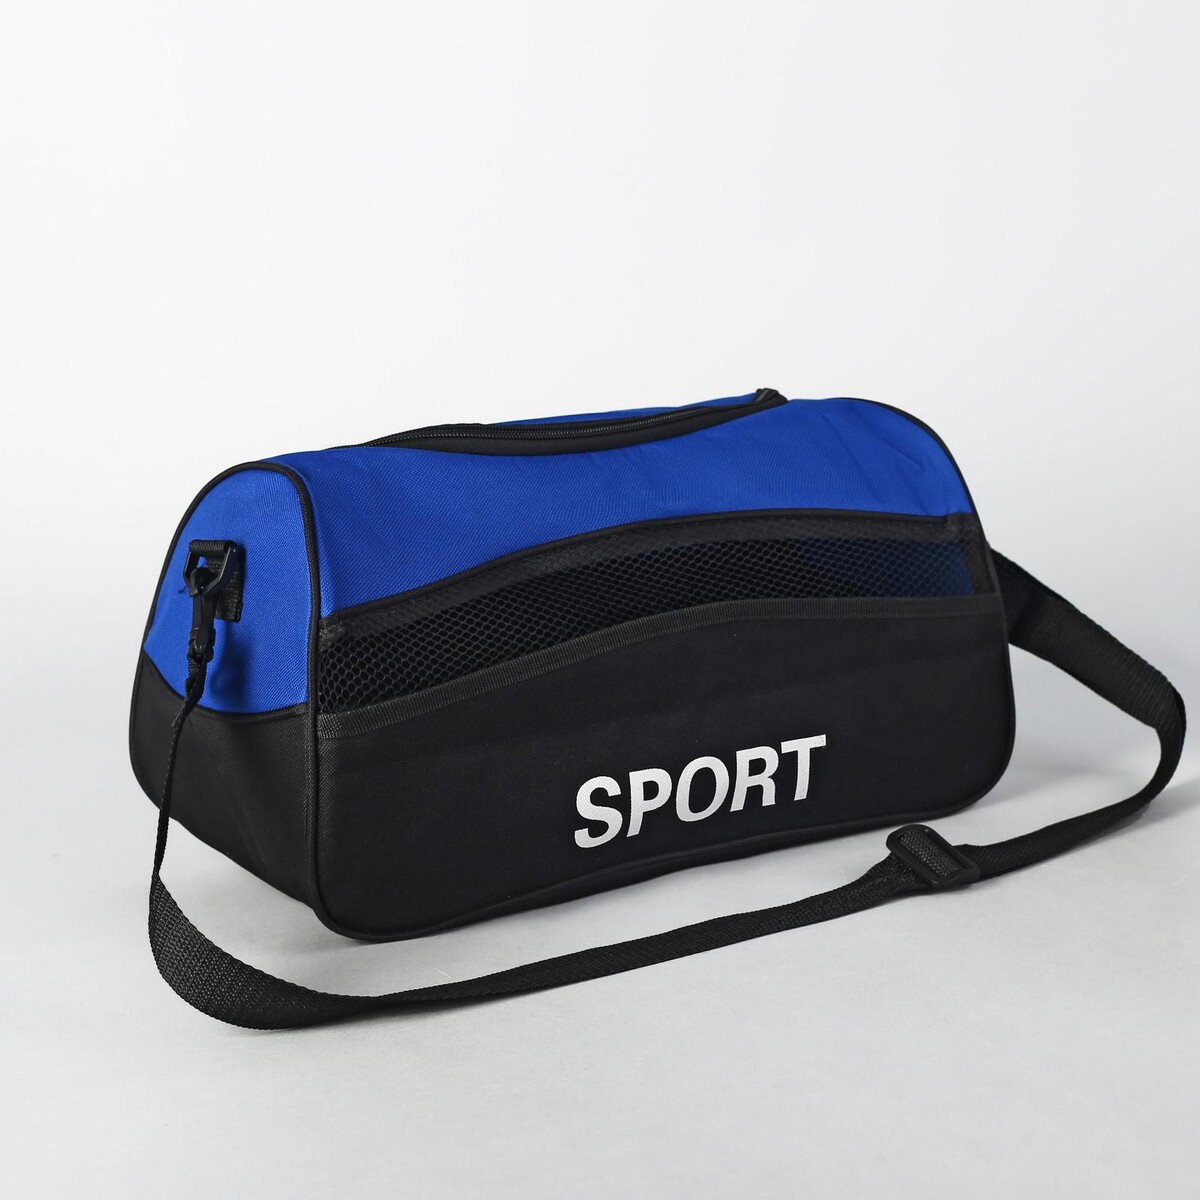 Сумка спортивная на молнии, наружный карман, длинный ремень, цвет синий/черный